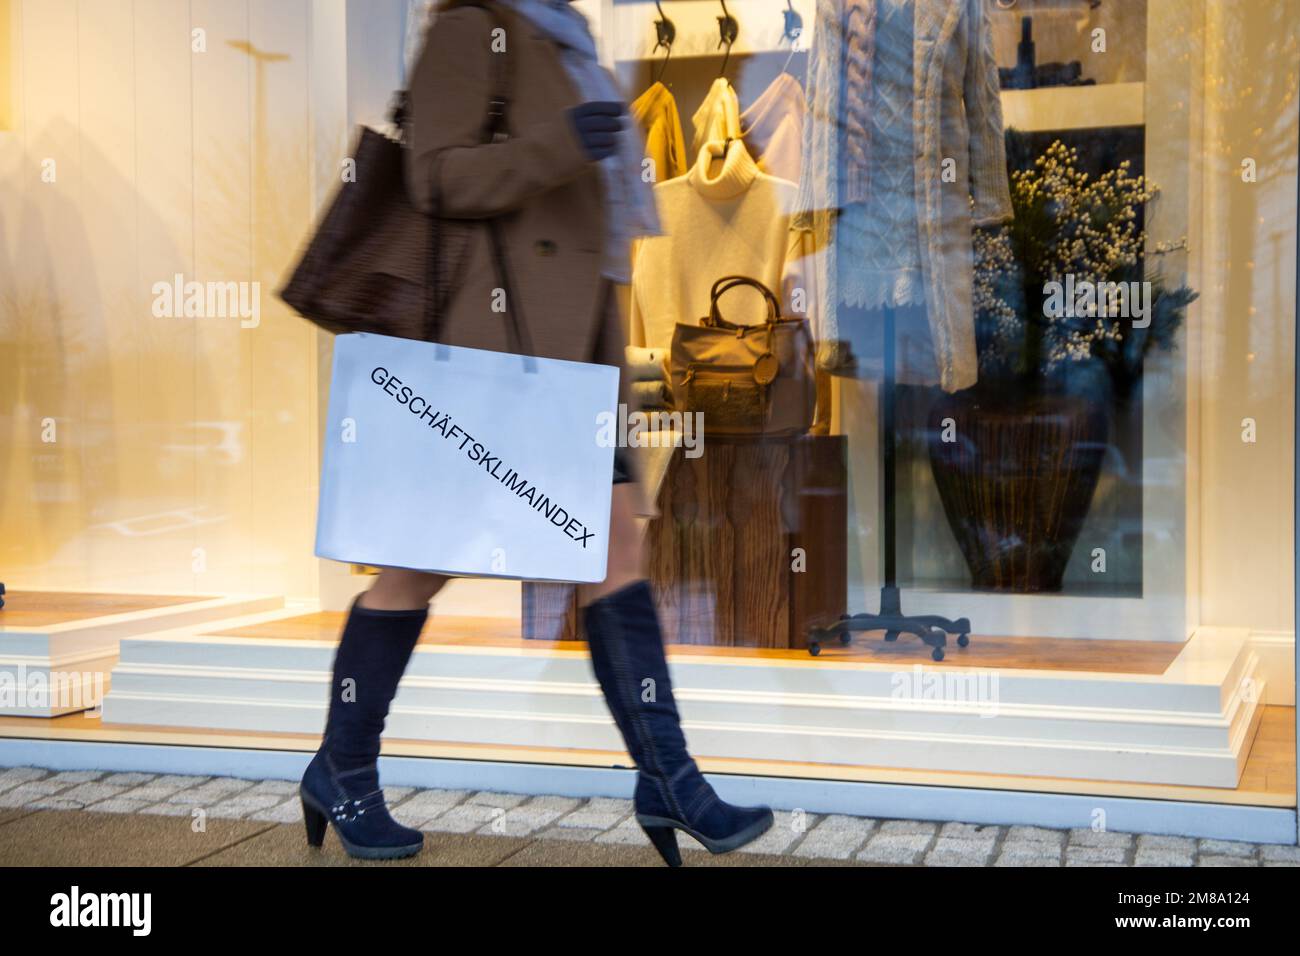 Symbolbild Konsum: Frau beim Einkaufen, auf der Einkaufstüte steht Geschäftsklimaindex  (Composing, Model released) Stock Photo